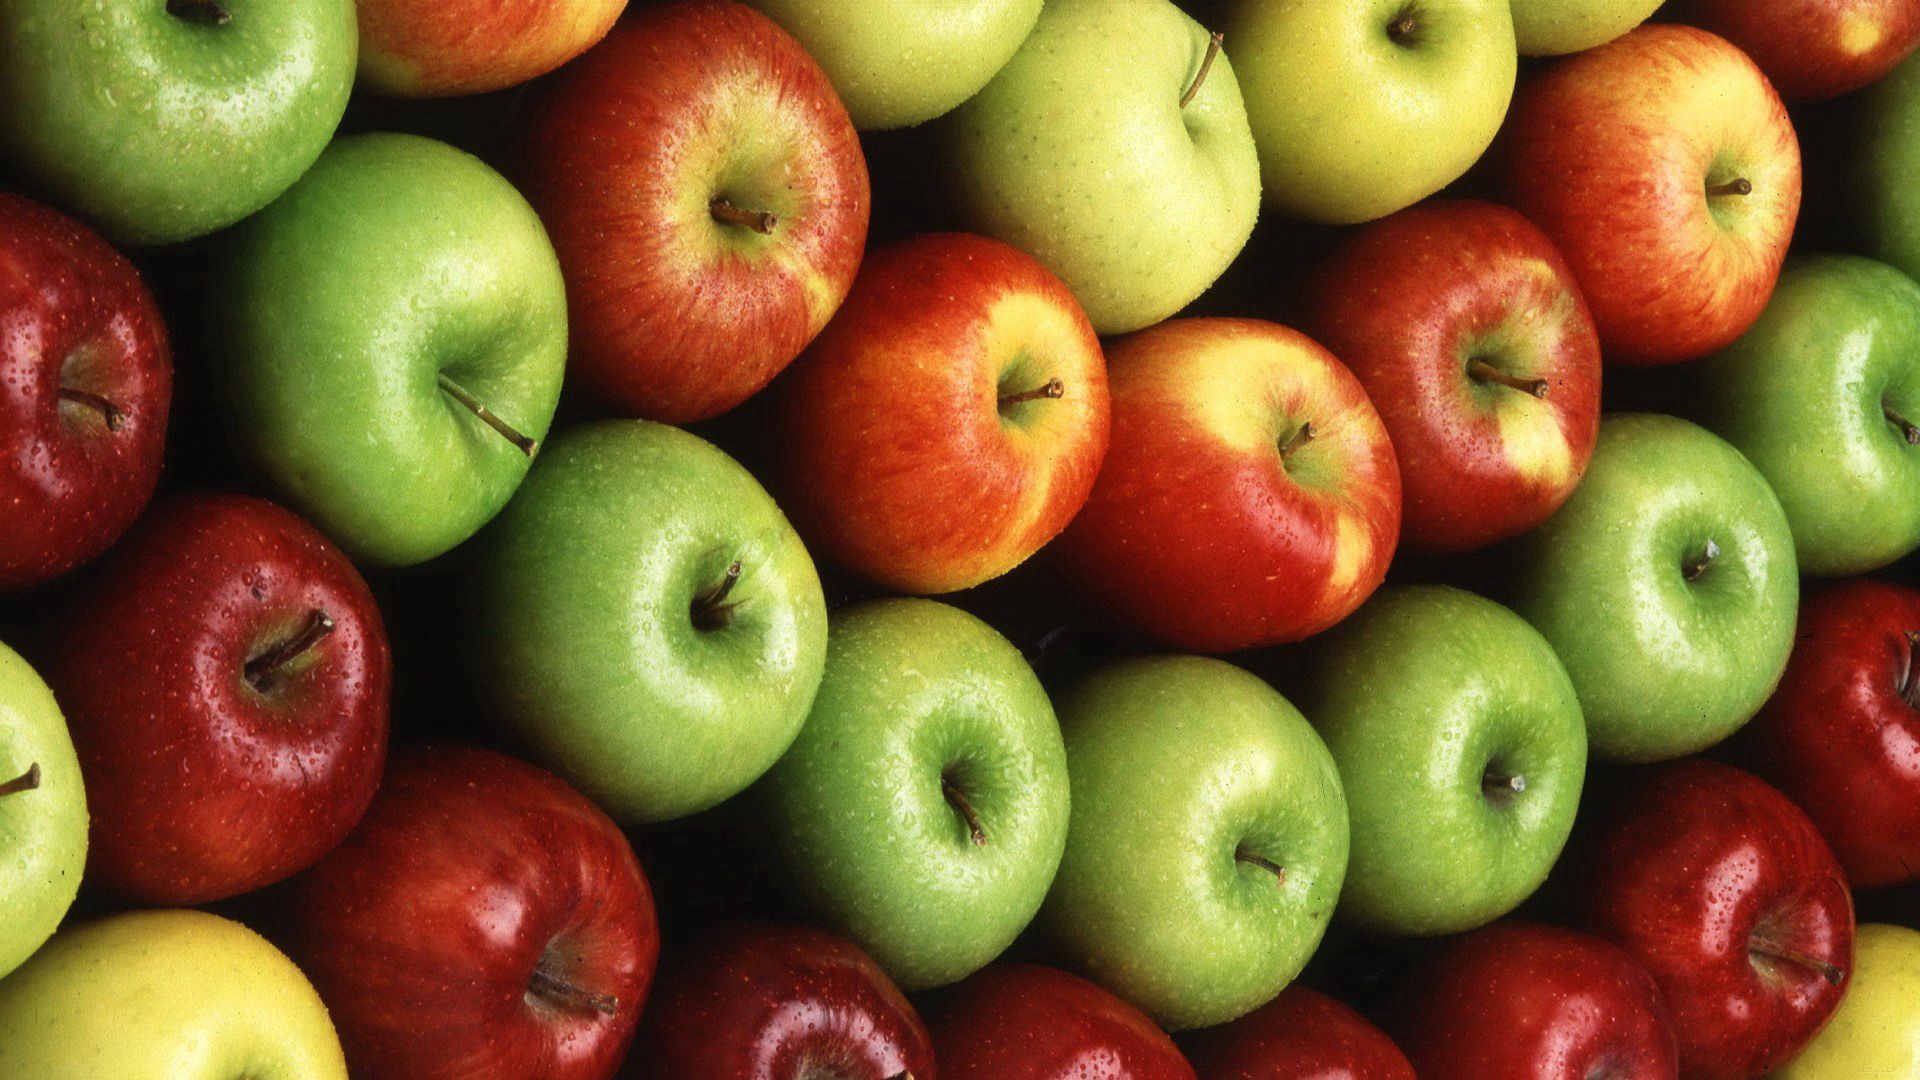 apples, food, yellow, green, red, varieties